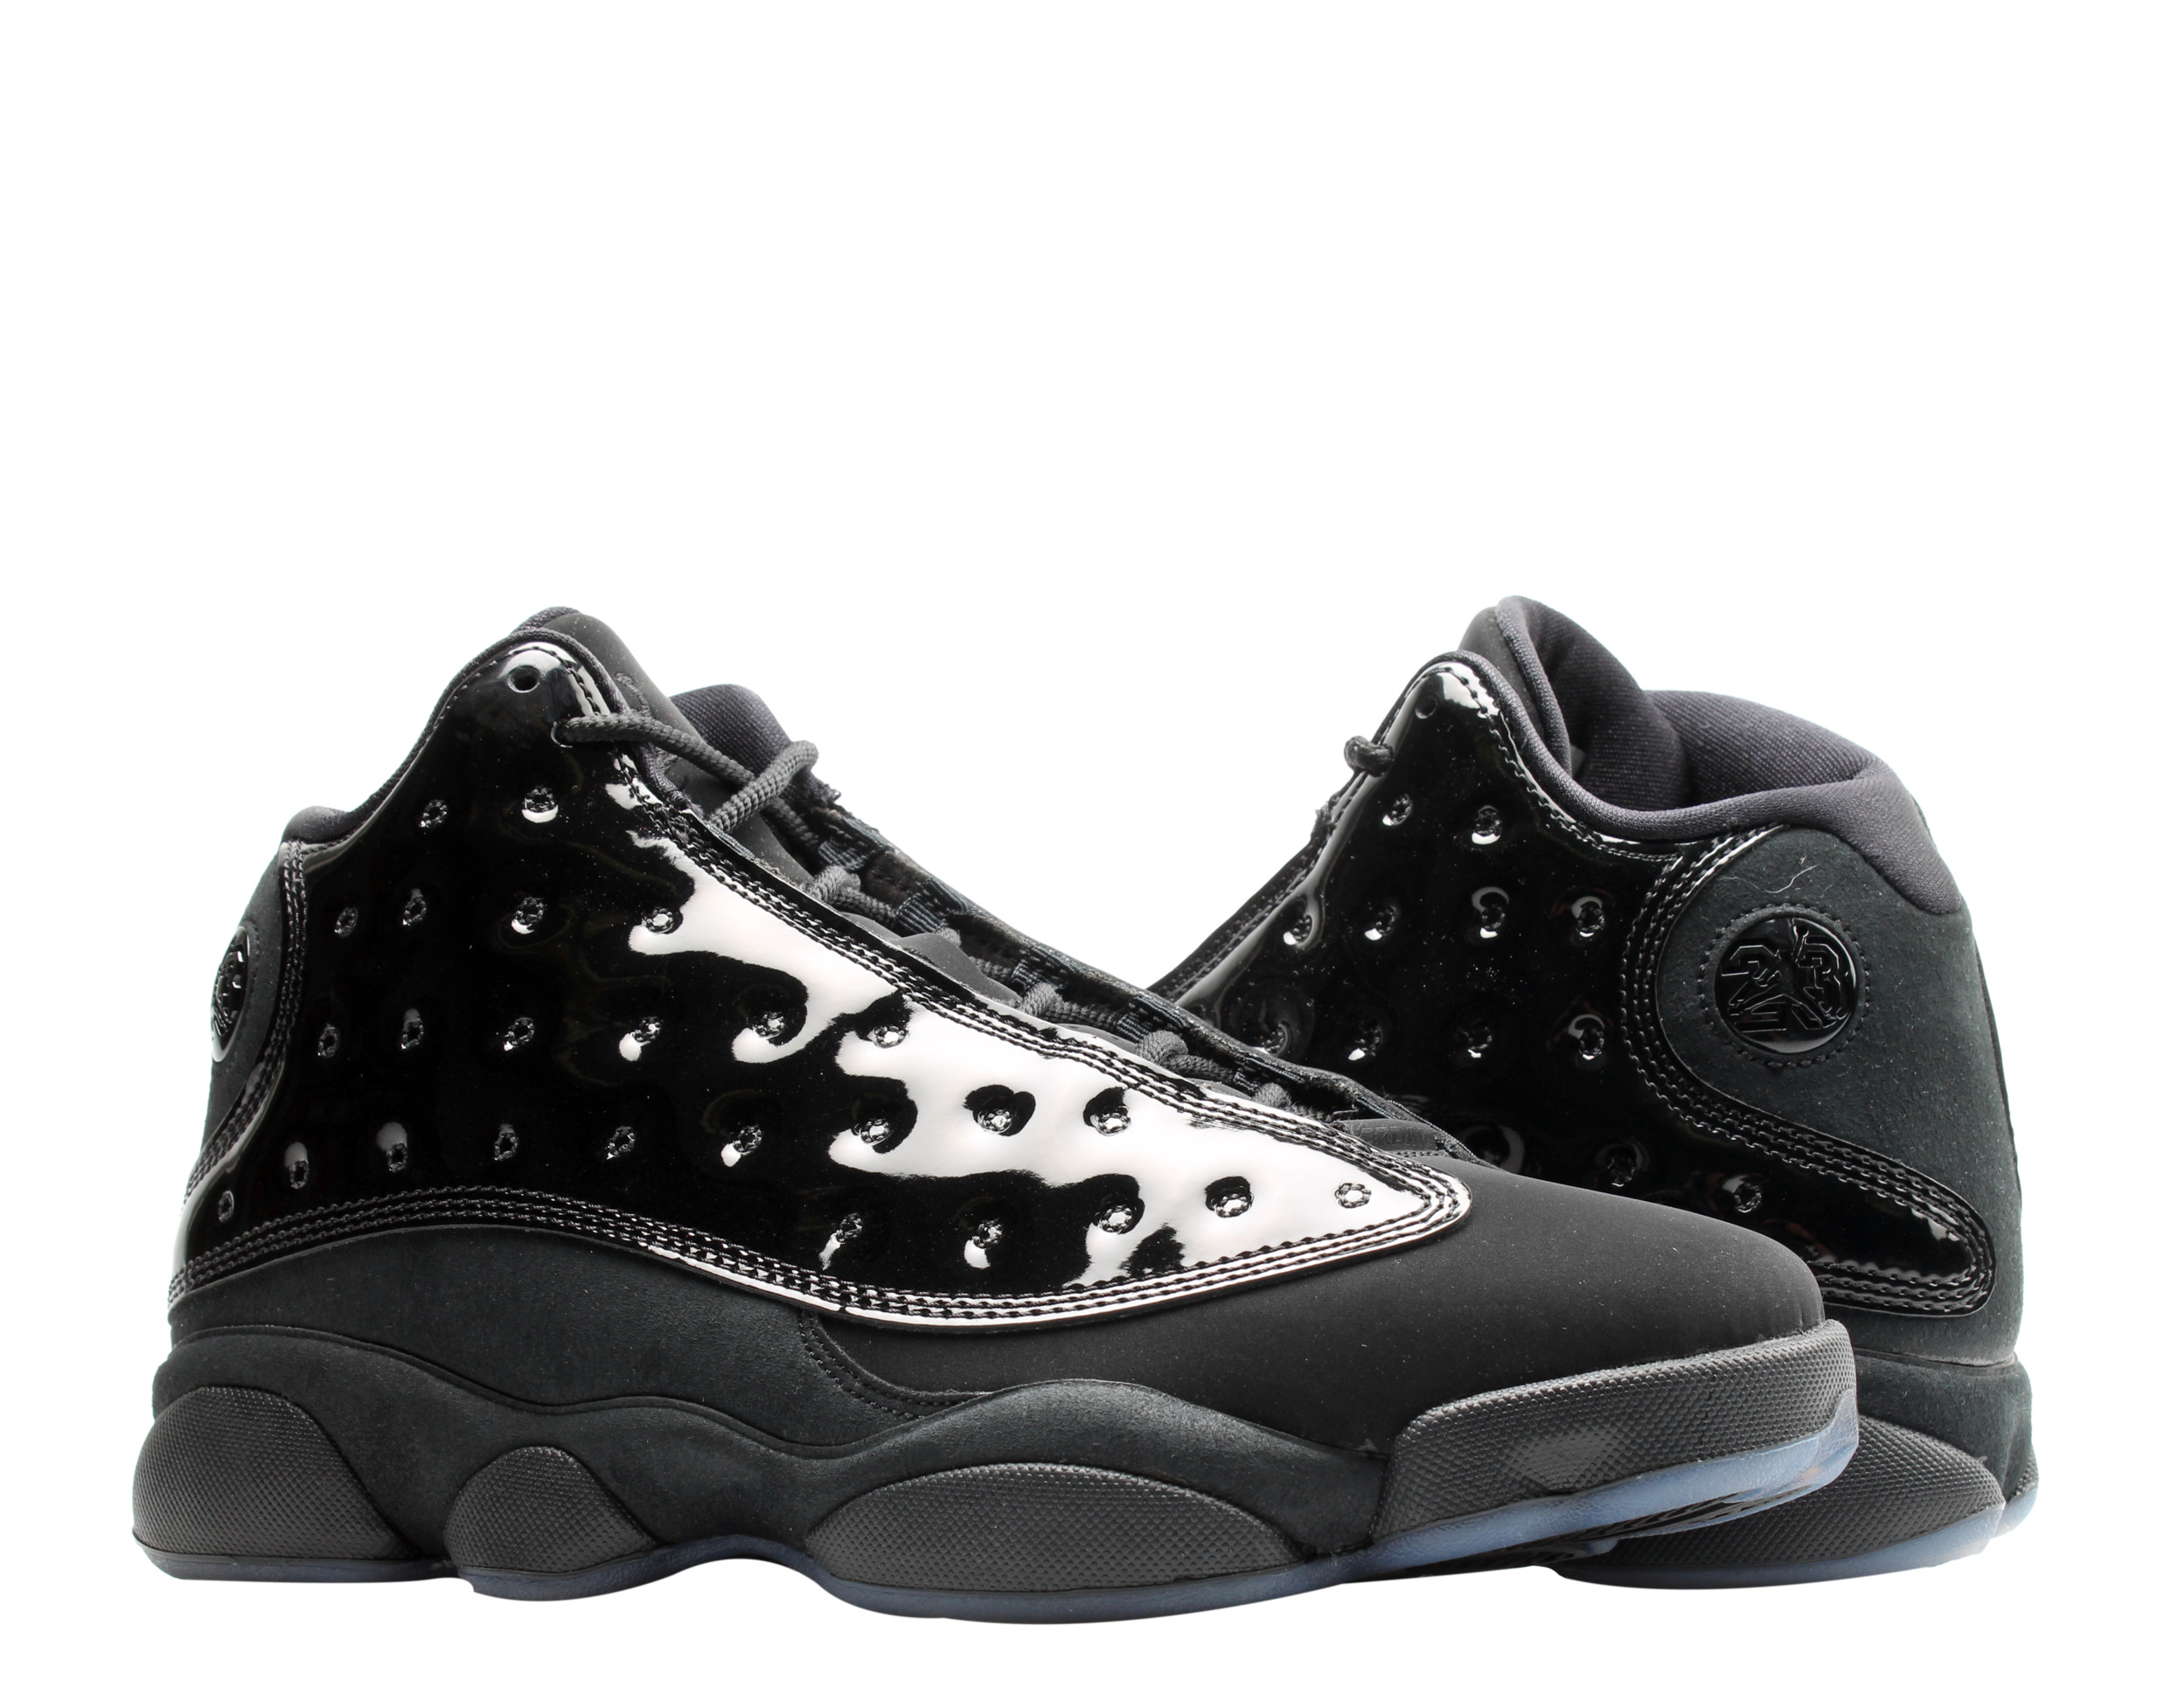 Nike Air Jordan 13 Retro Black Cap and Gown Men's Basketball Shoes 414571-012 - image 1 of 6